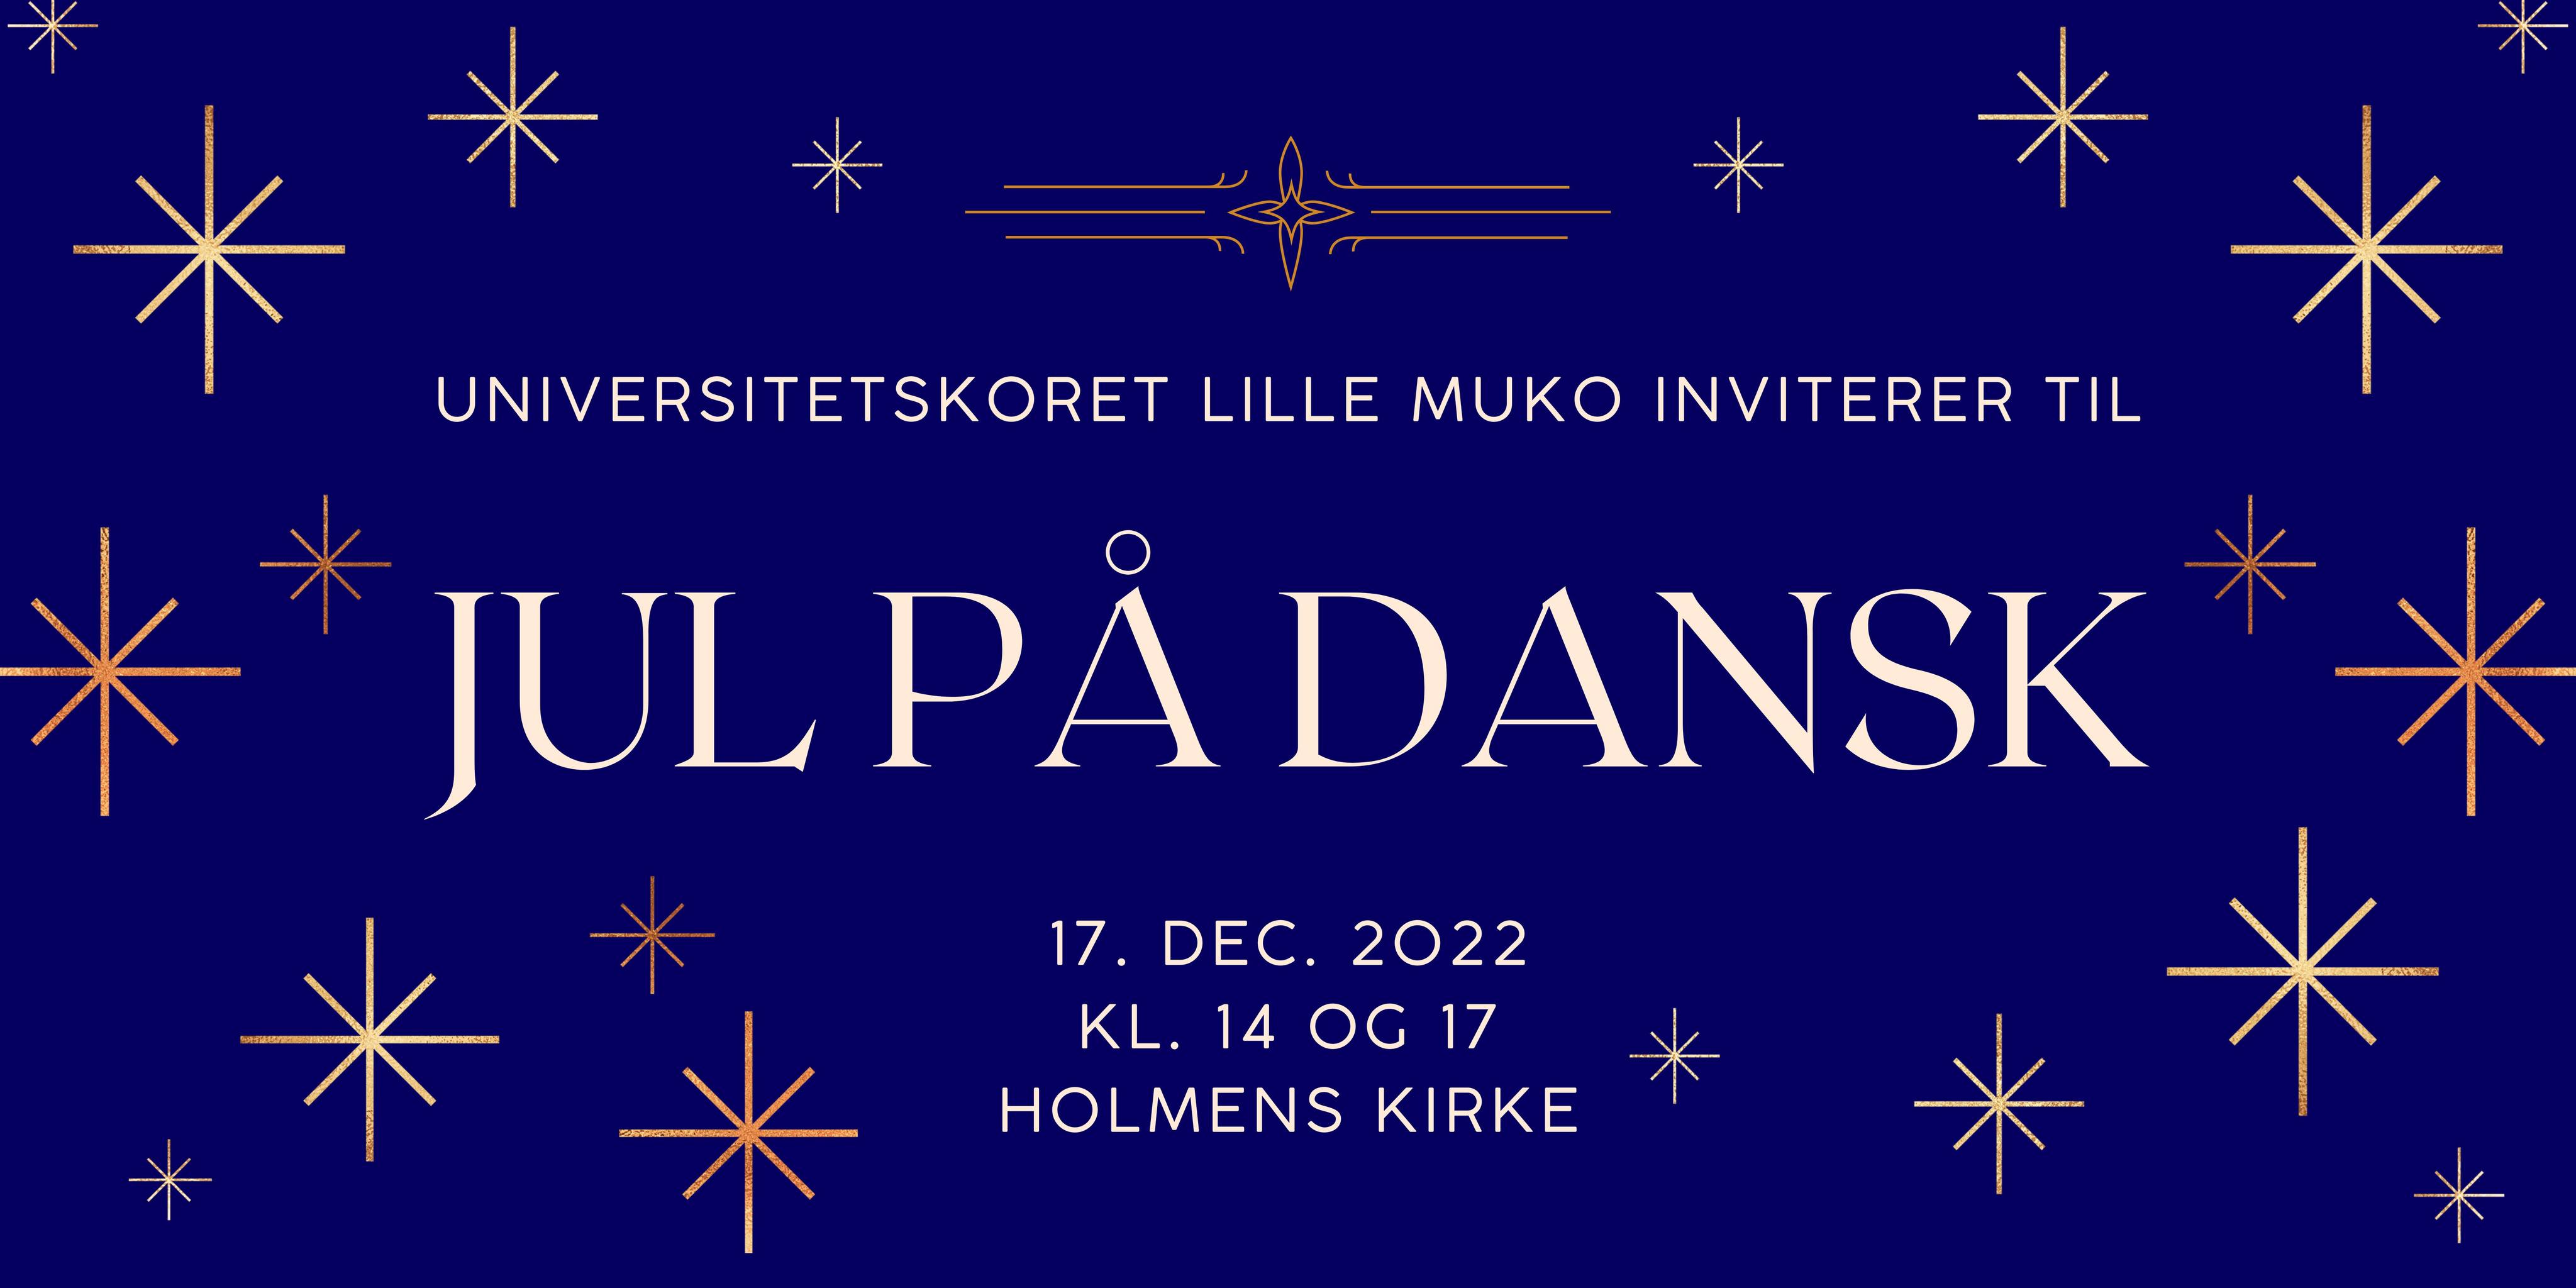 Jul på Dansk i Holmens Kirke i København med Universitetskoret Lille MUKO